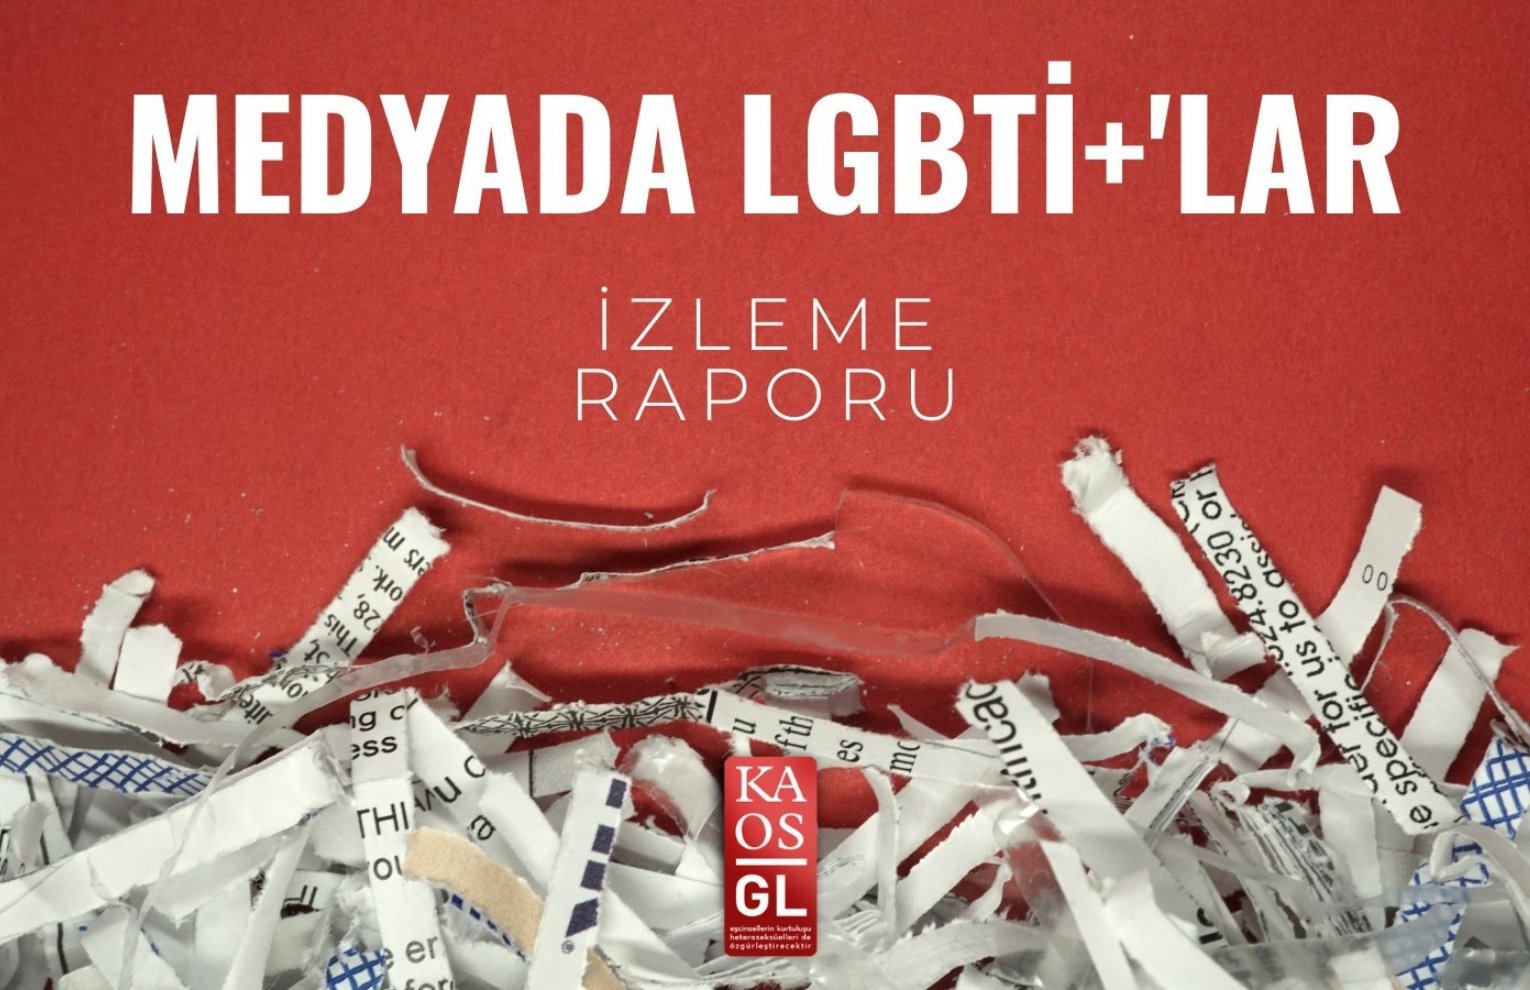 Kaos GL’den medyada LGBTİ+ temsili raporu